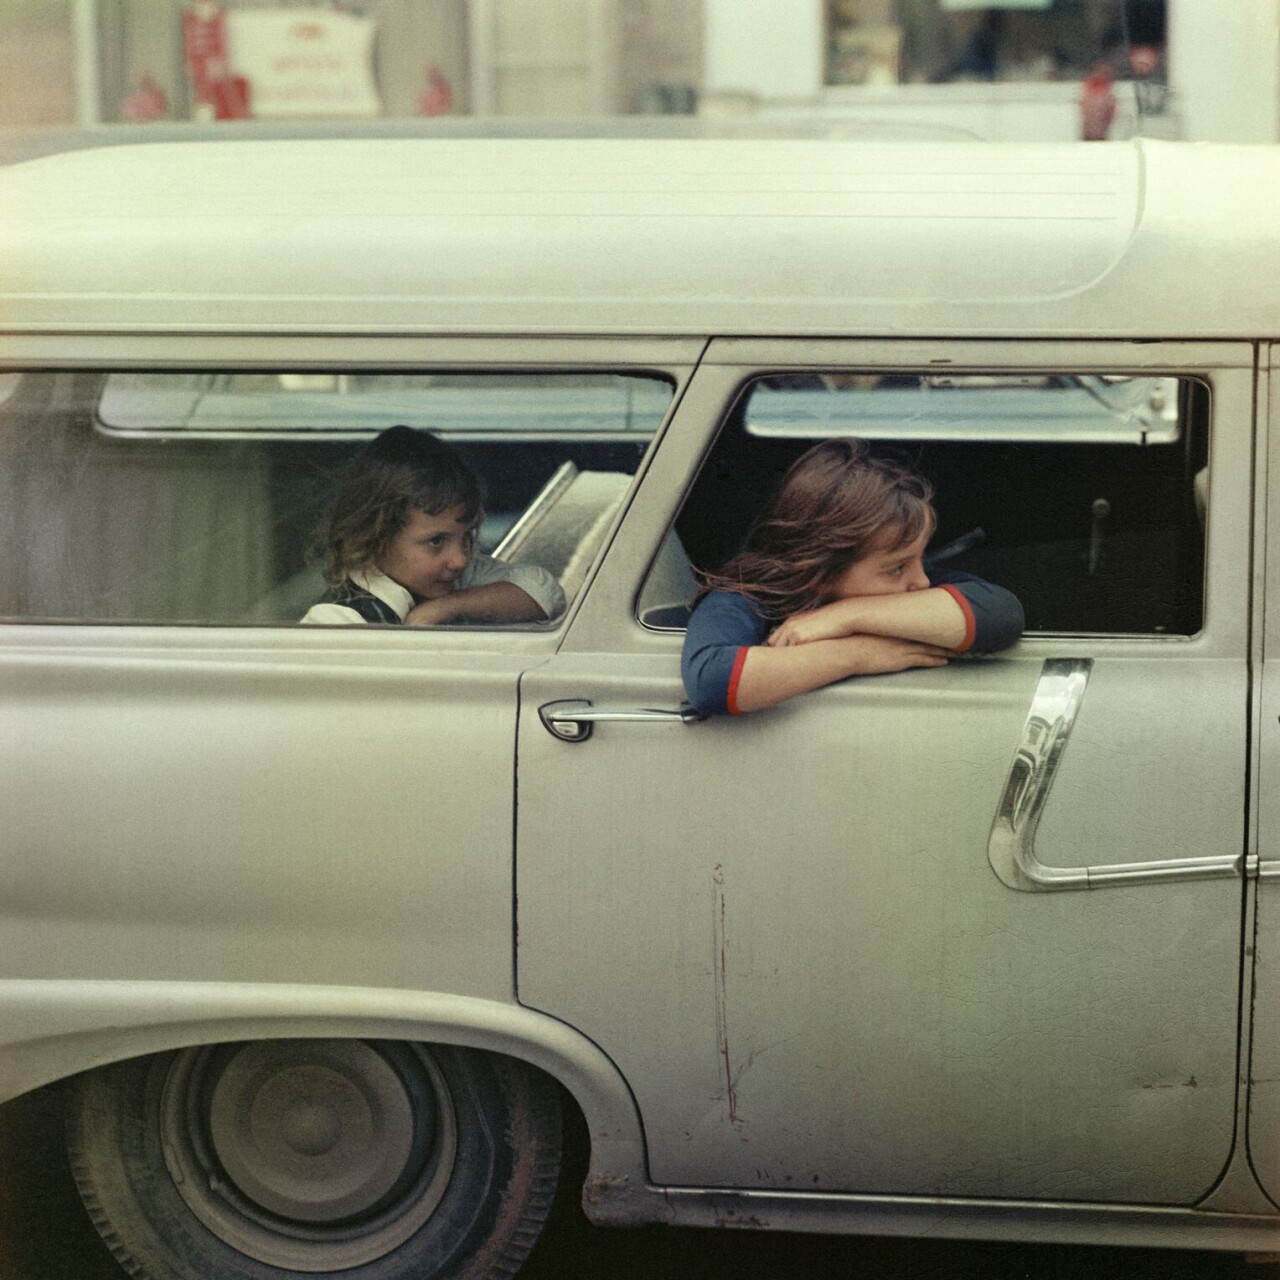 Две девочки в автомобиле, Вашингтон, округ Колумбия, 1967. Фотограф Марио Карничелли